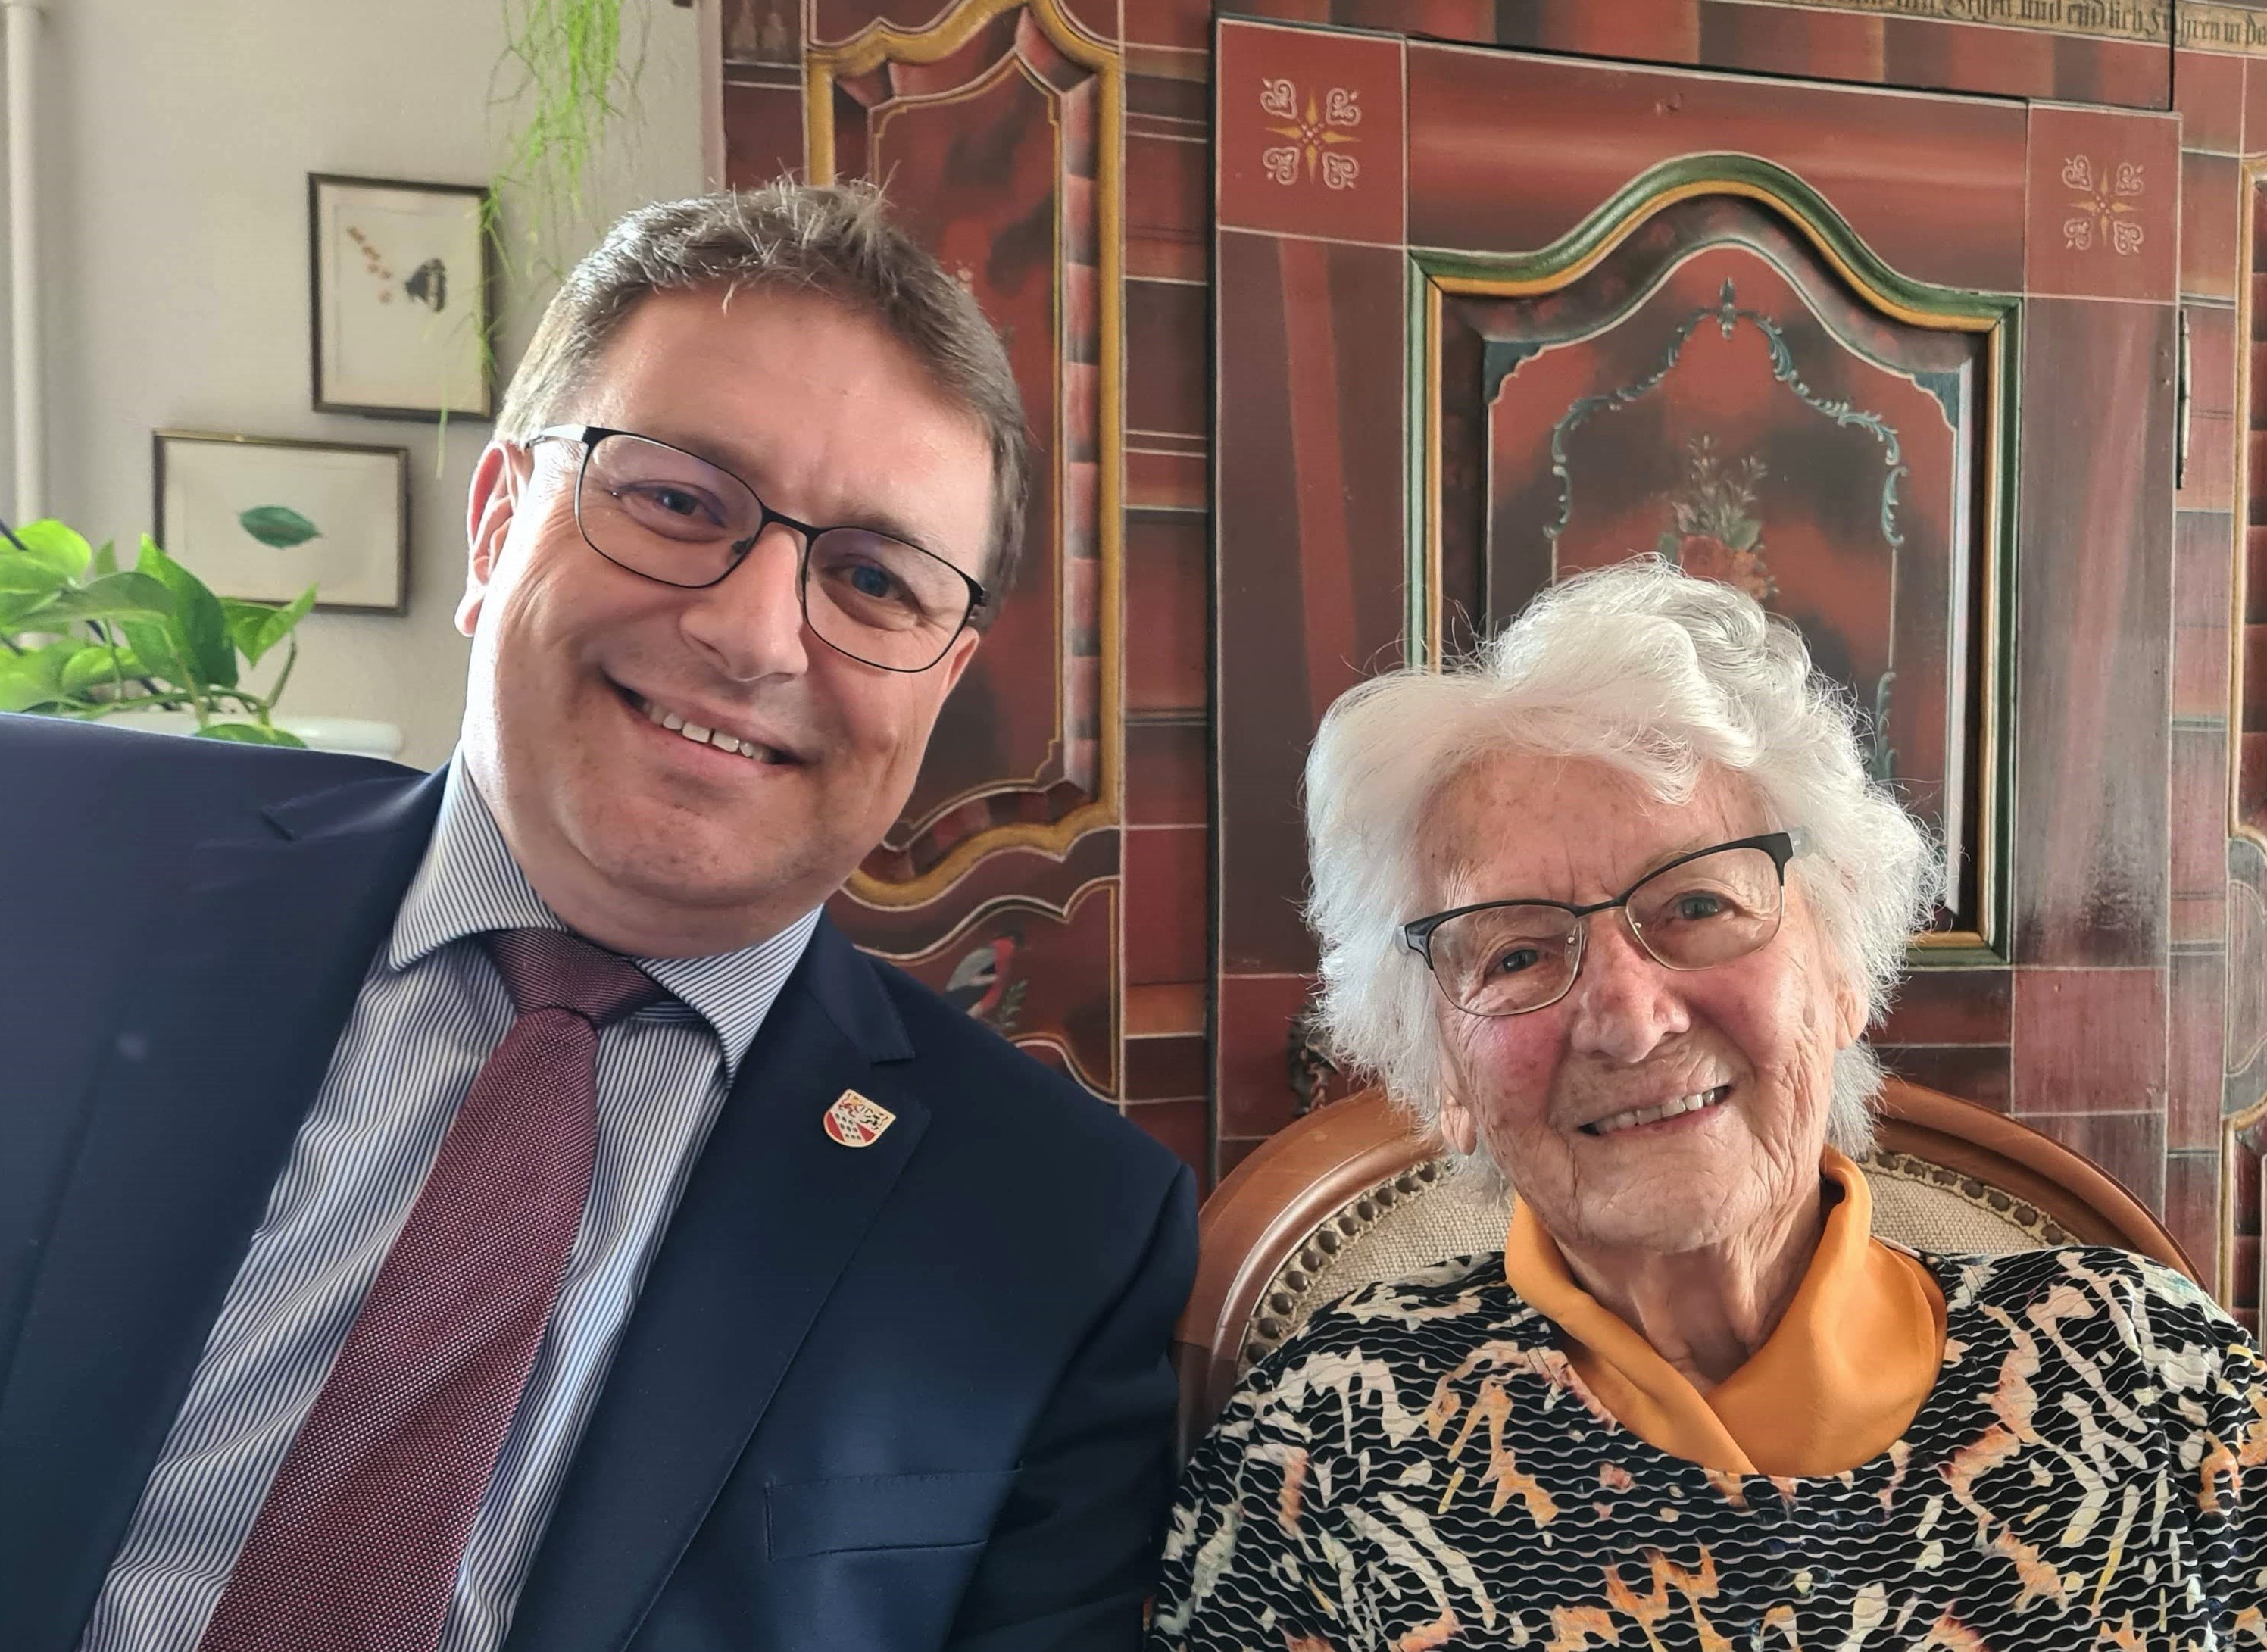 Am 16. April 2022, durfte Frau Rosa Reusser ihren 90. Geburtstag feiern.
Die Gemeindebehörden gratulieren herzlich!